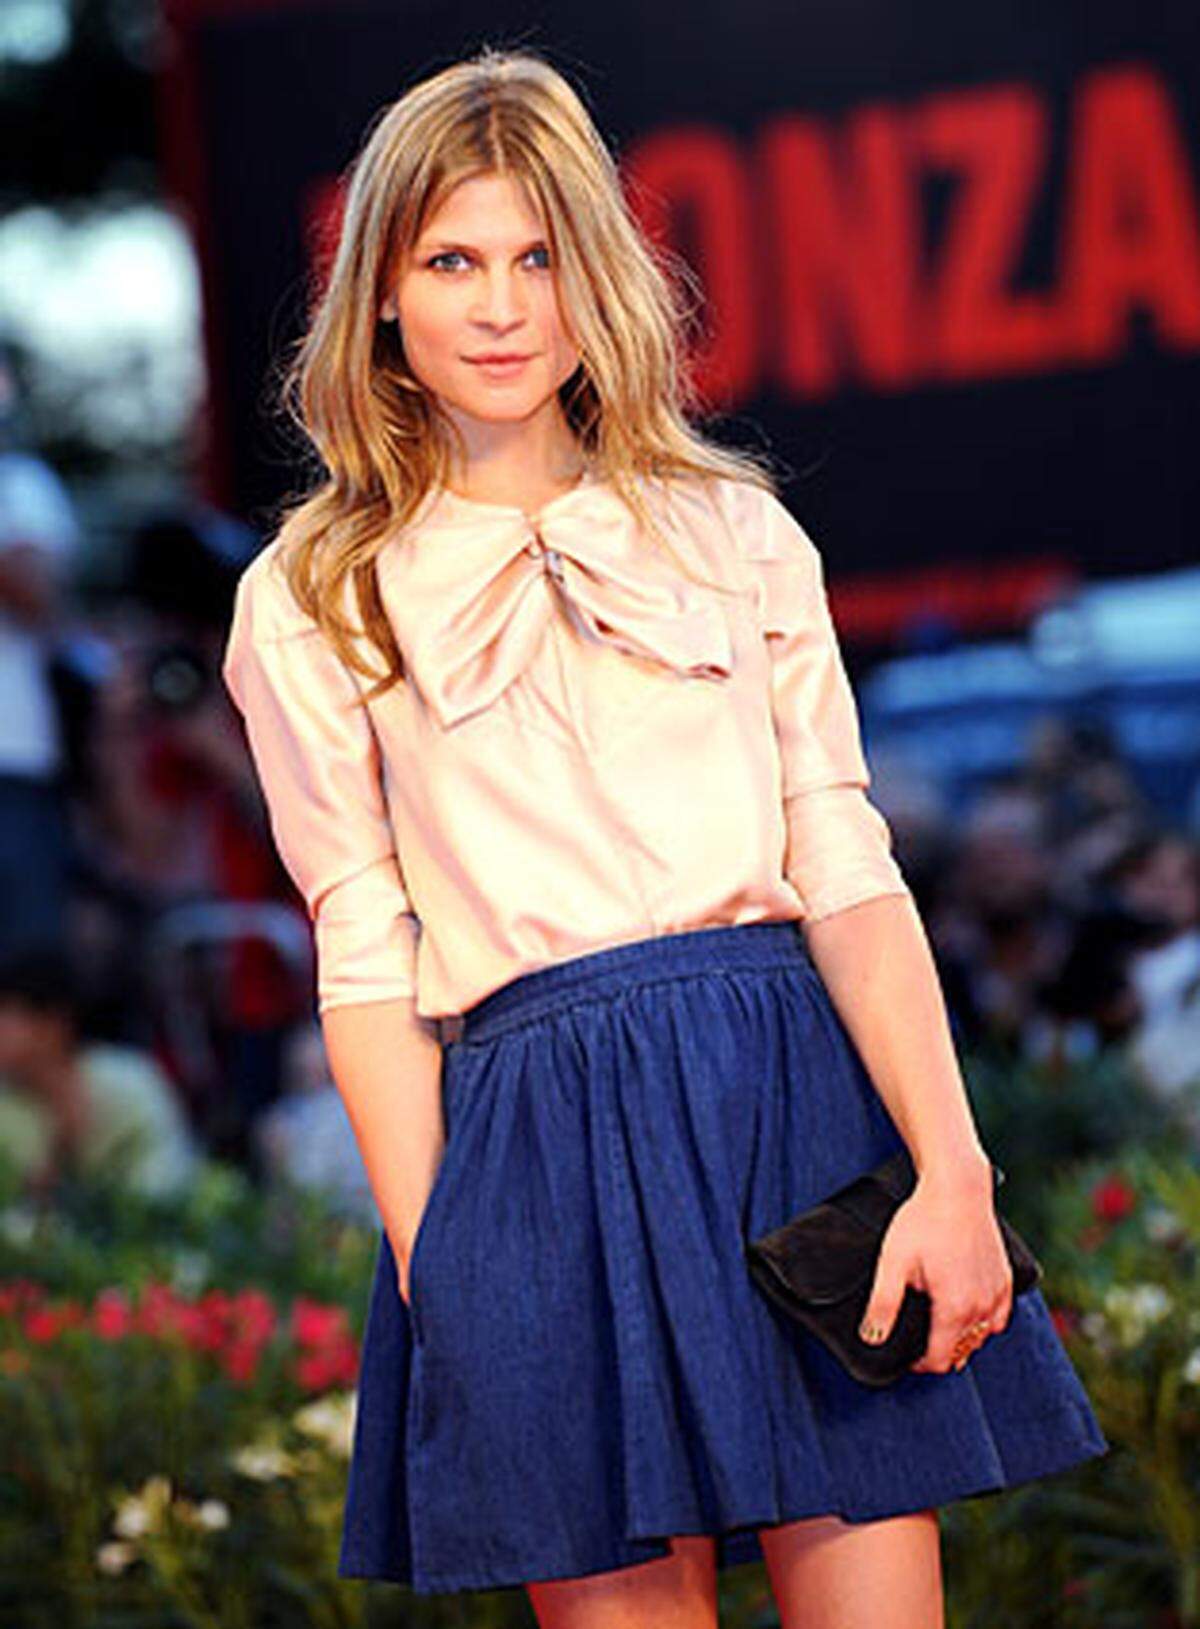 Die Französin Clémence Poésy spielte in "Brügge sehen und sterben?" und in den Harry Potter Filmen (als Fleur Delacour) mit.